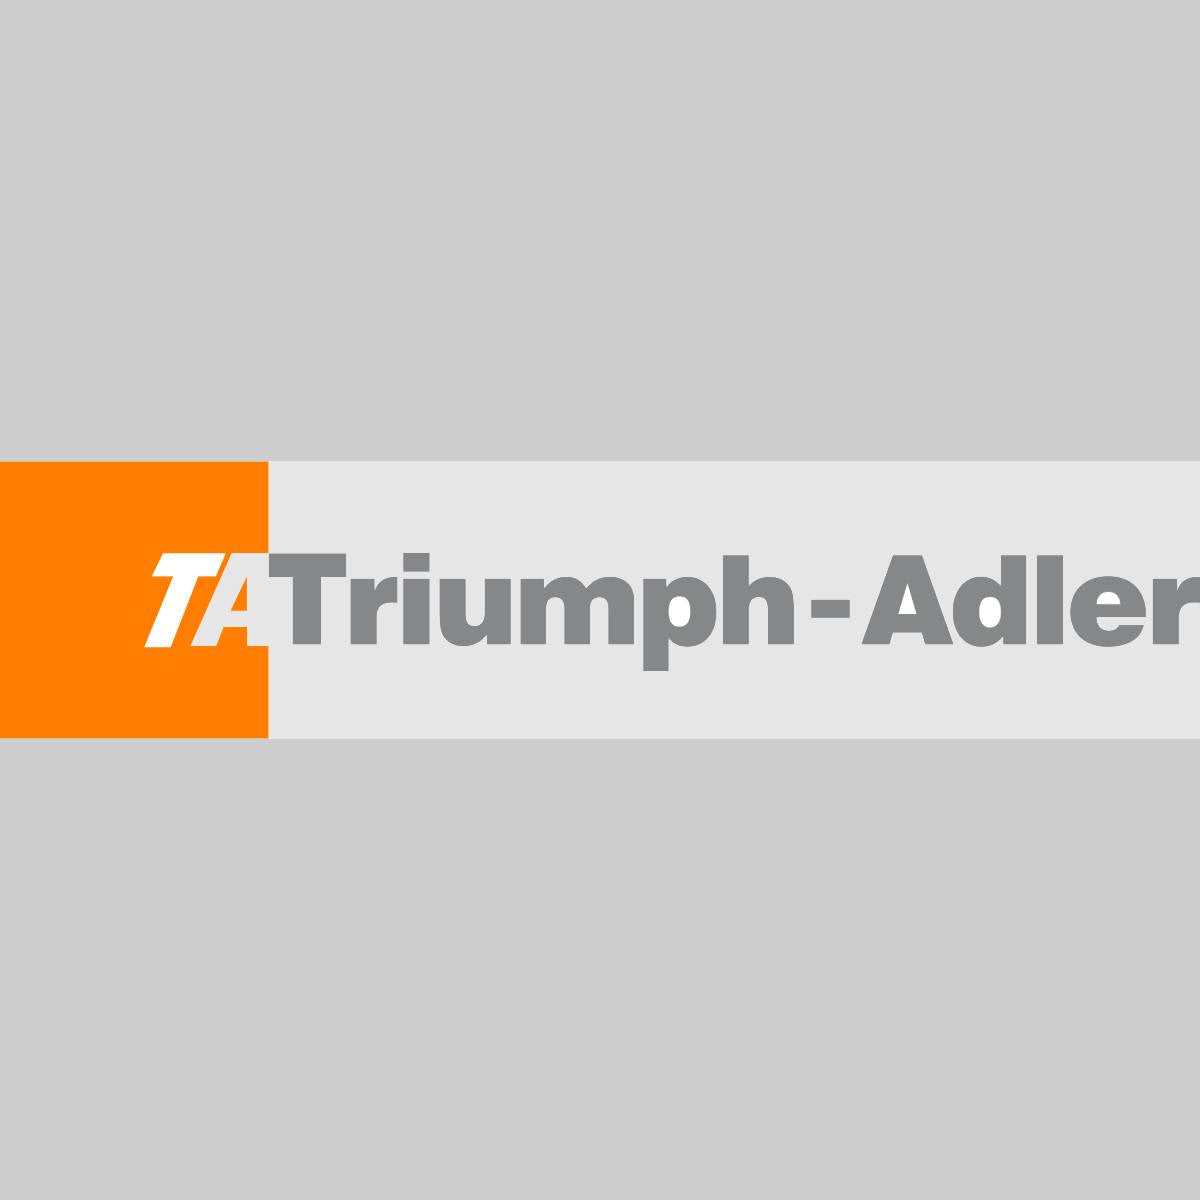 "Original Triumph-Adler Toner Magenta 652510014 for TA DCC2725 DCC2730 UtaxCDC 1